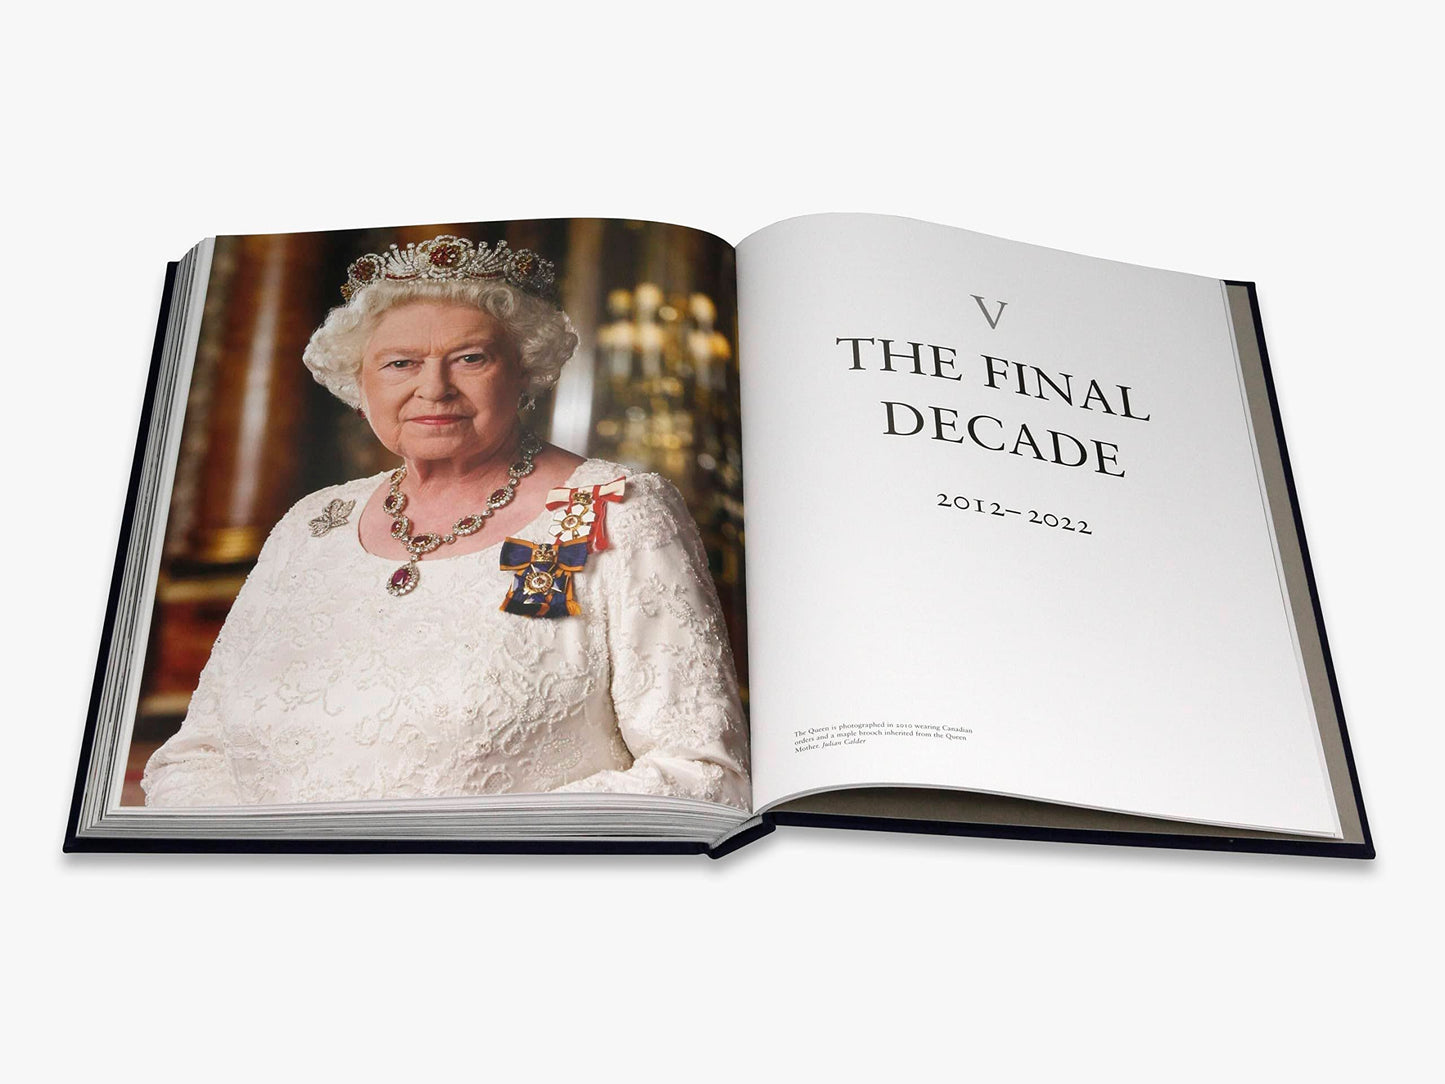 Queen Elizabeth II: A Photographic Portrait